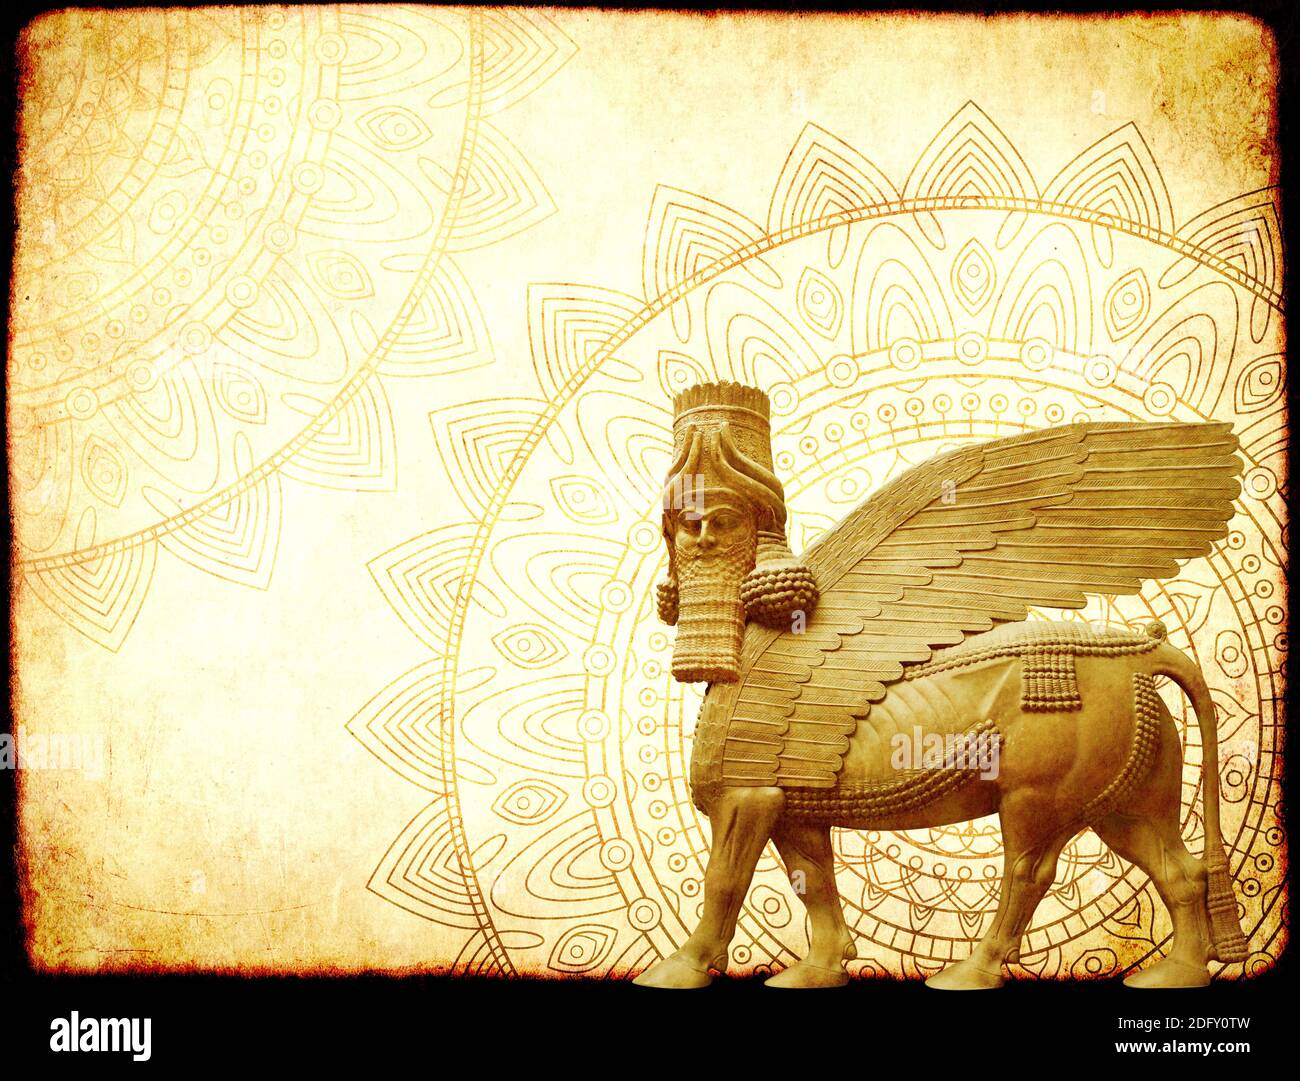 Arrière-plan grunge avec texture papier, zentangle mandala et lamassu - statue de taureau ailé à tête humaine, Déité de protection assyrienne. Copier l'espace f Banque D'Images